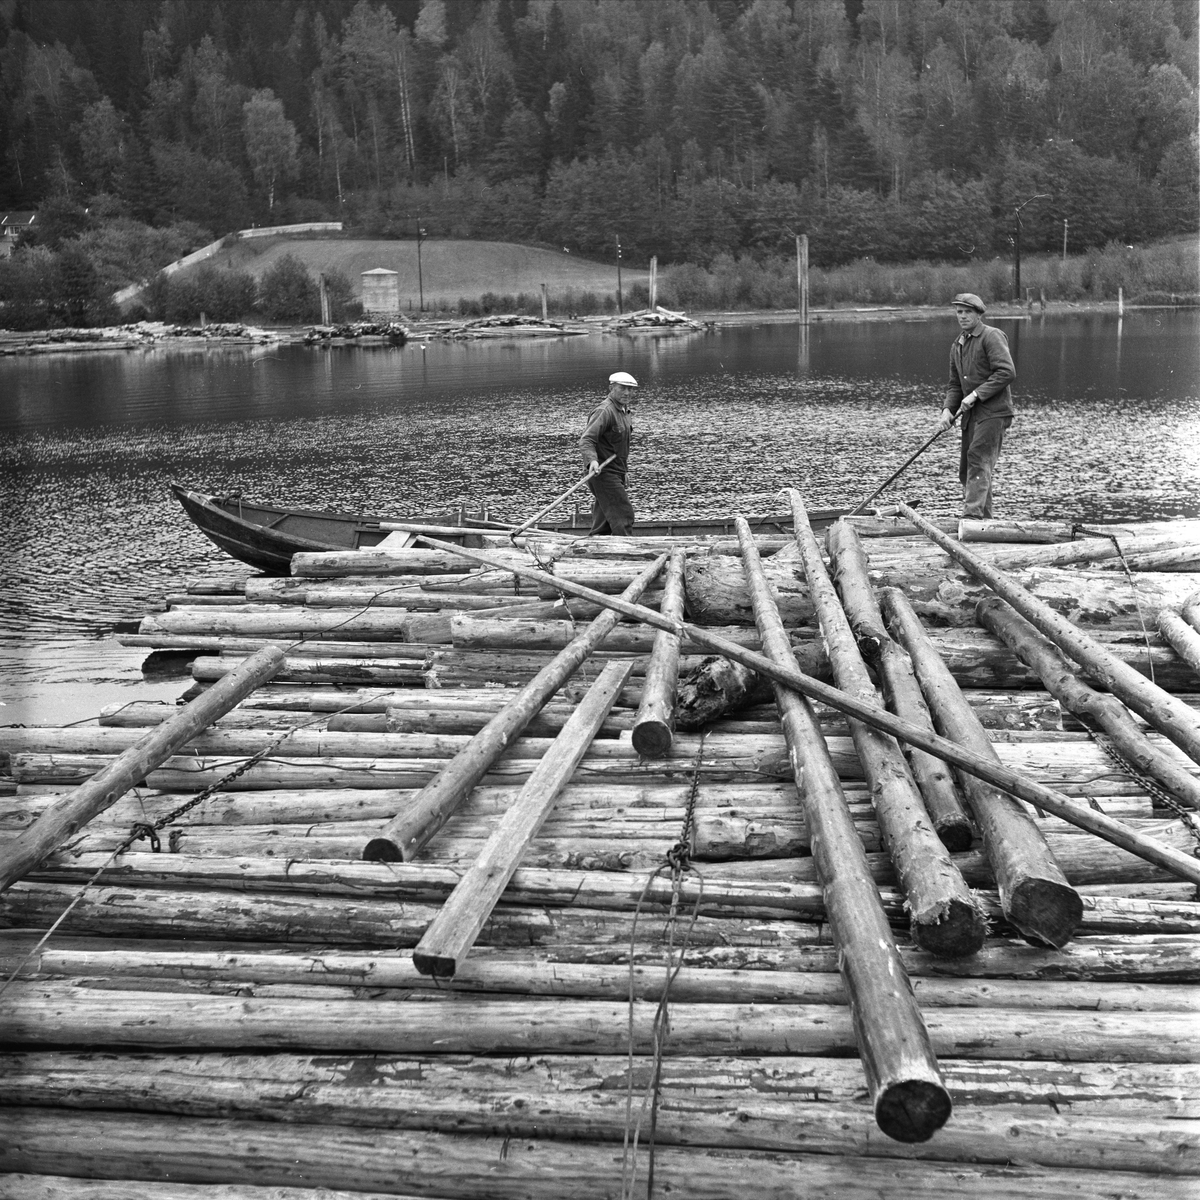 Tømmerfløting ved Fredrikstad, Østfold, 10.10.1959. Menn i arbeide med tømmer. Lensebåt.